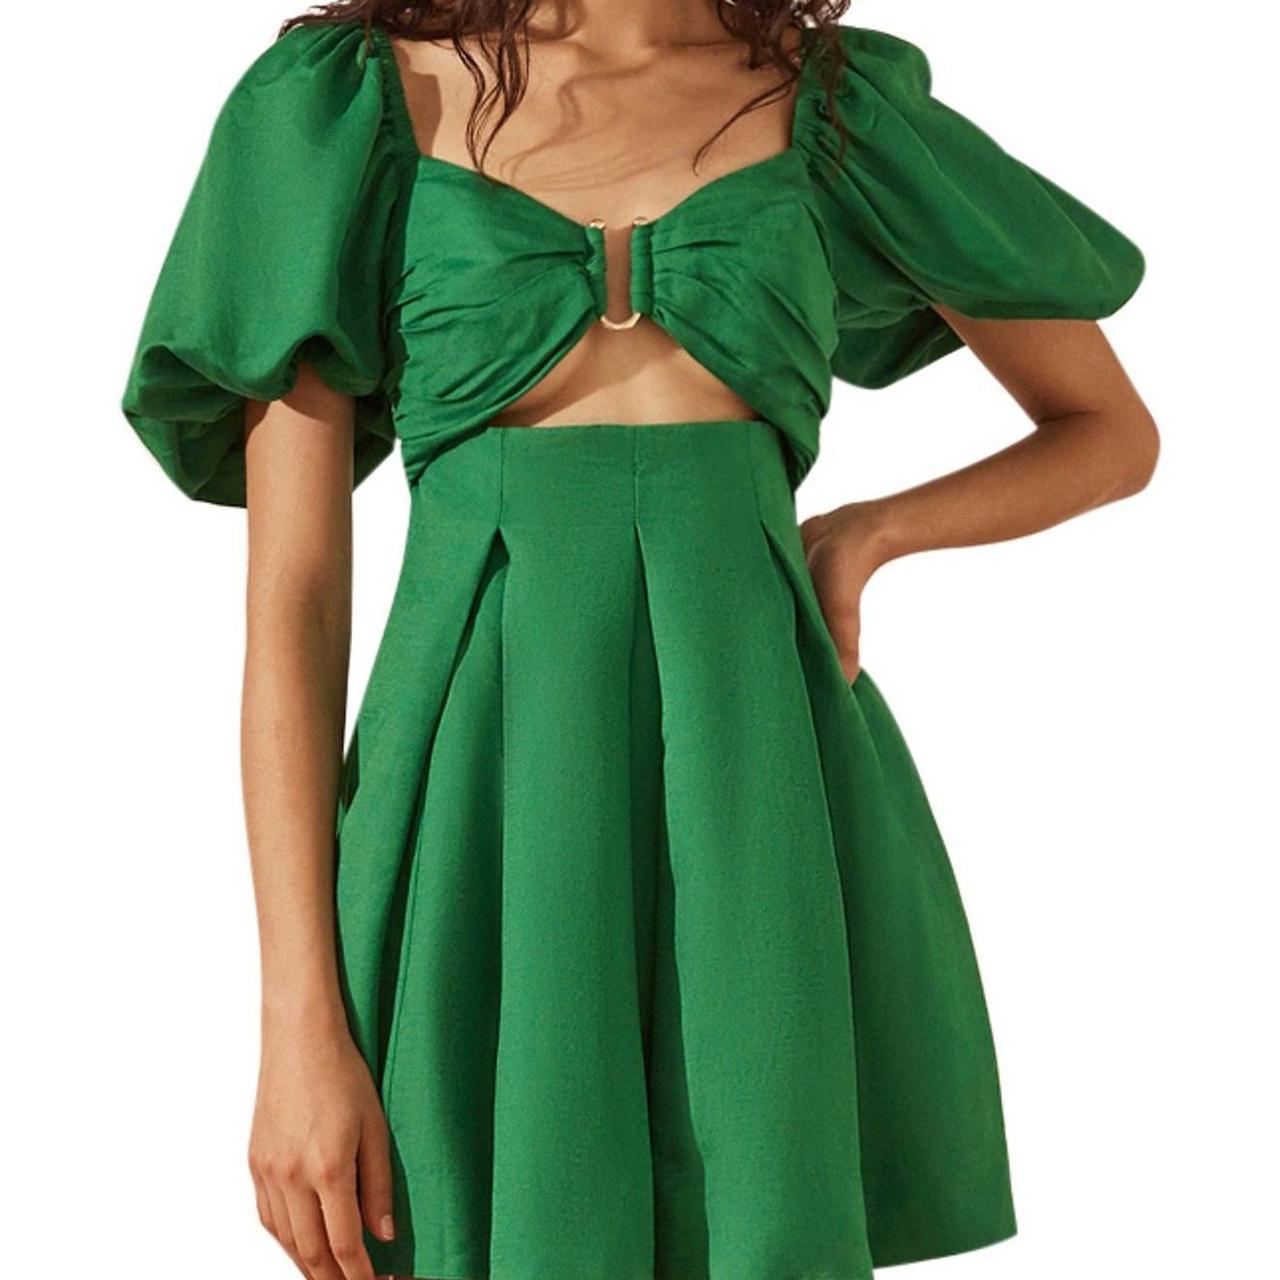 Shona Joy Mare dress Gorgeous green linen Shona Joy... - Depop